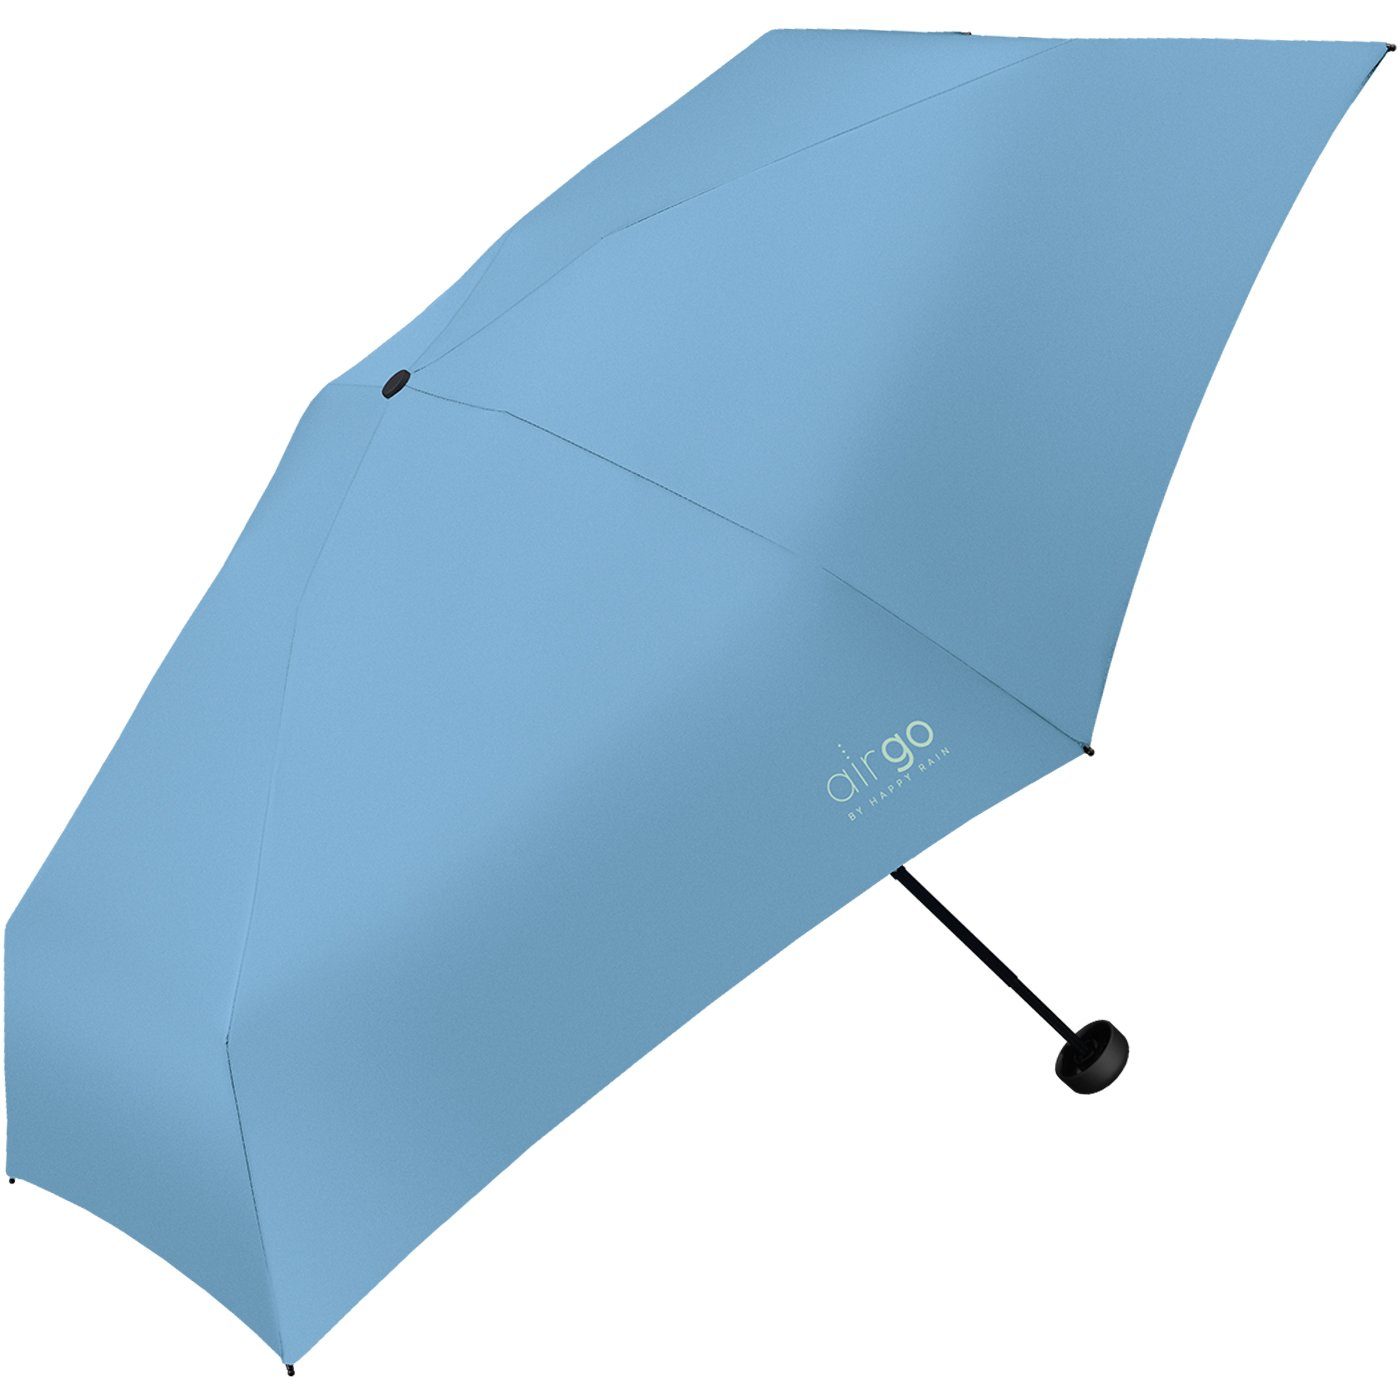 die blau superleicht, Handtasche RAIN - HAPPY Go Air 137 Reisegepäck Gramm und für Taschenregenschirm das perfekt Supermini-Schirm